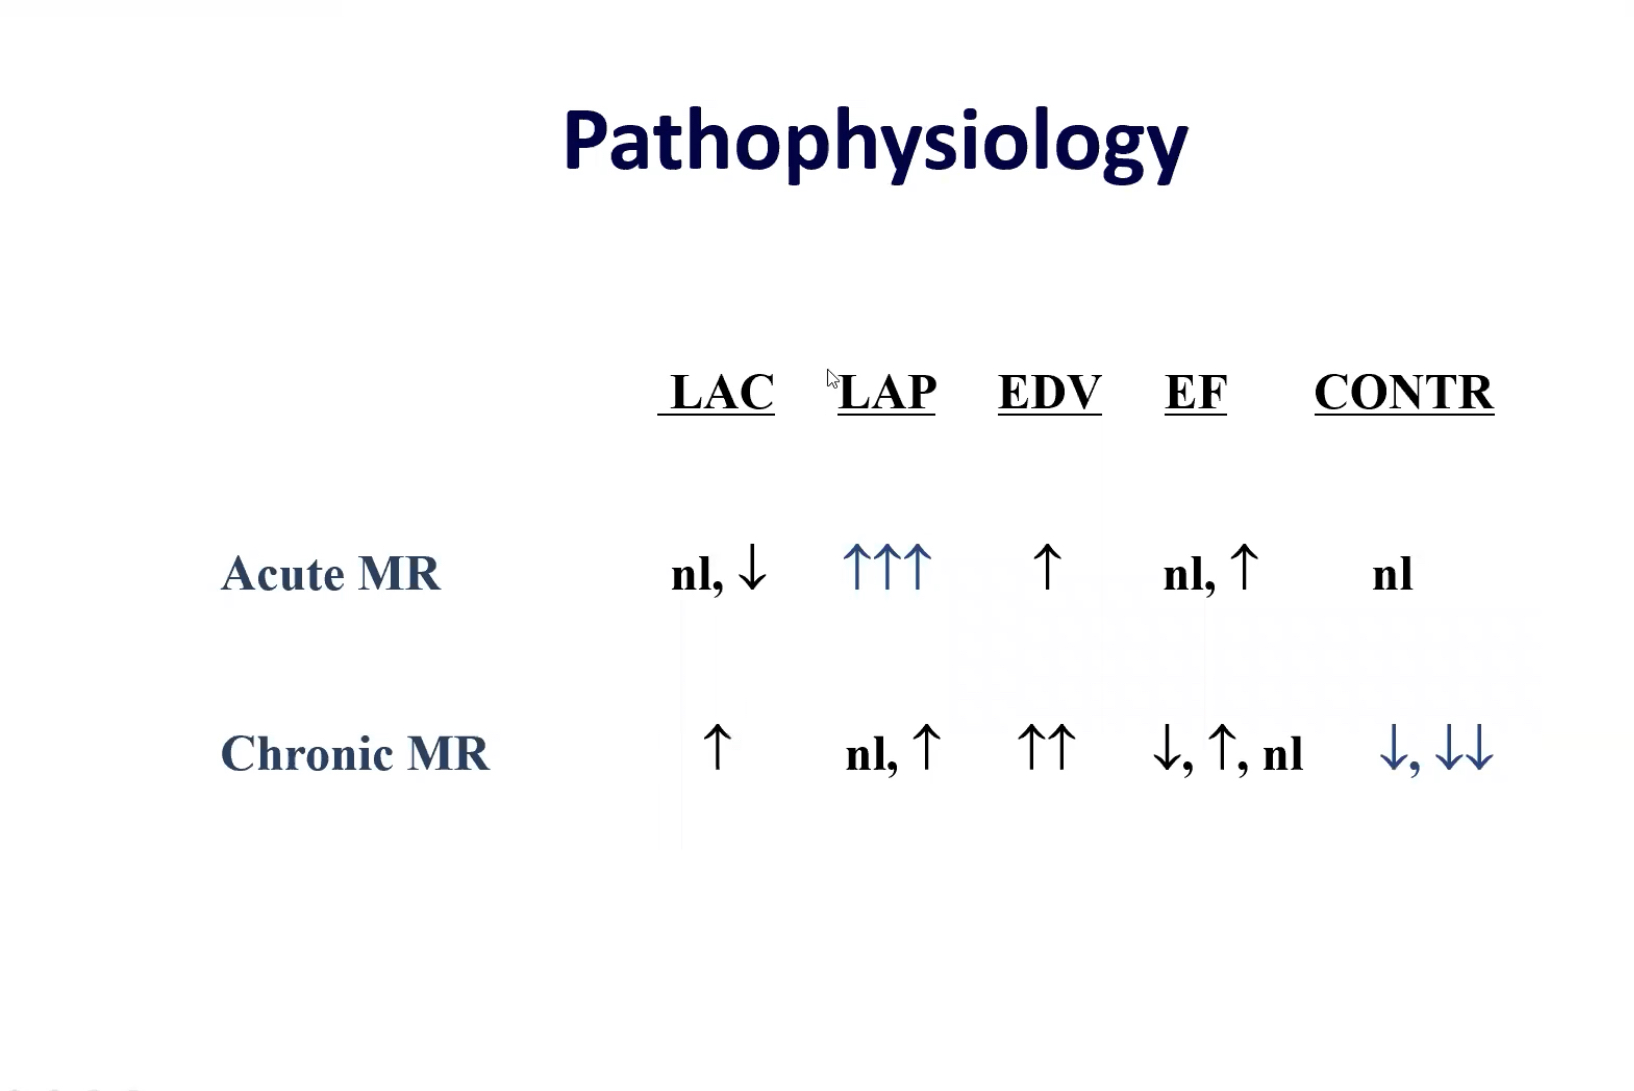 Pathophysiology of acute and chronic MR